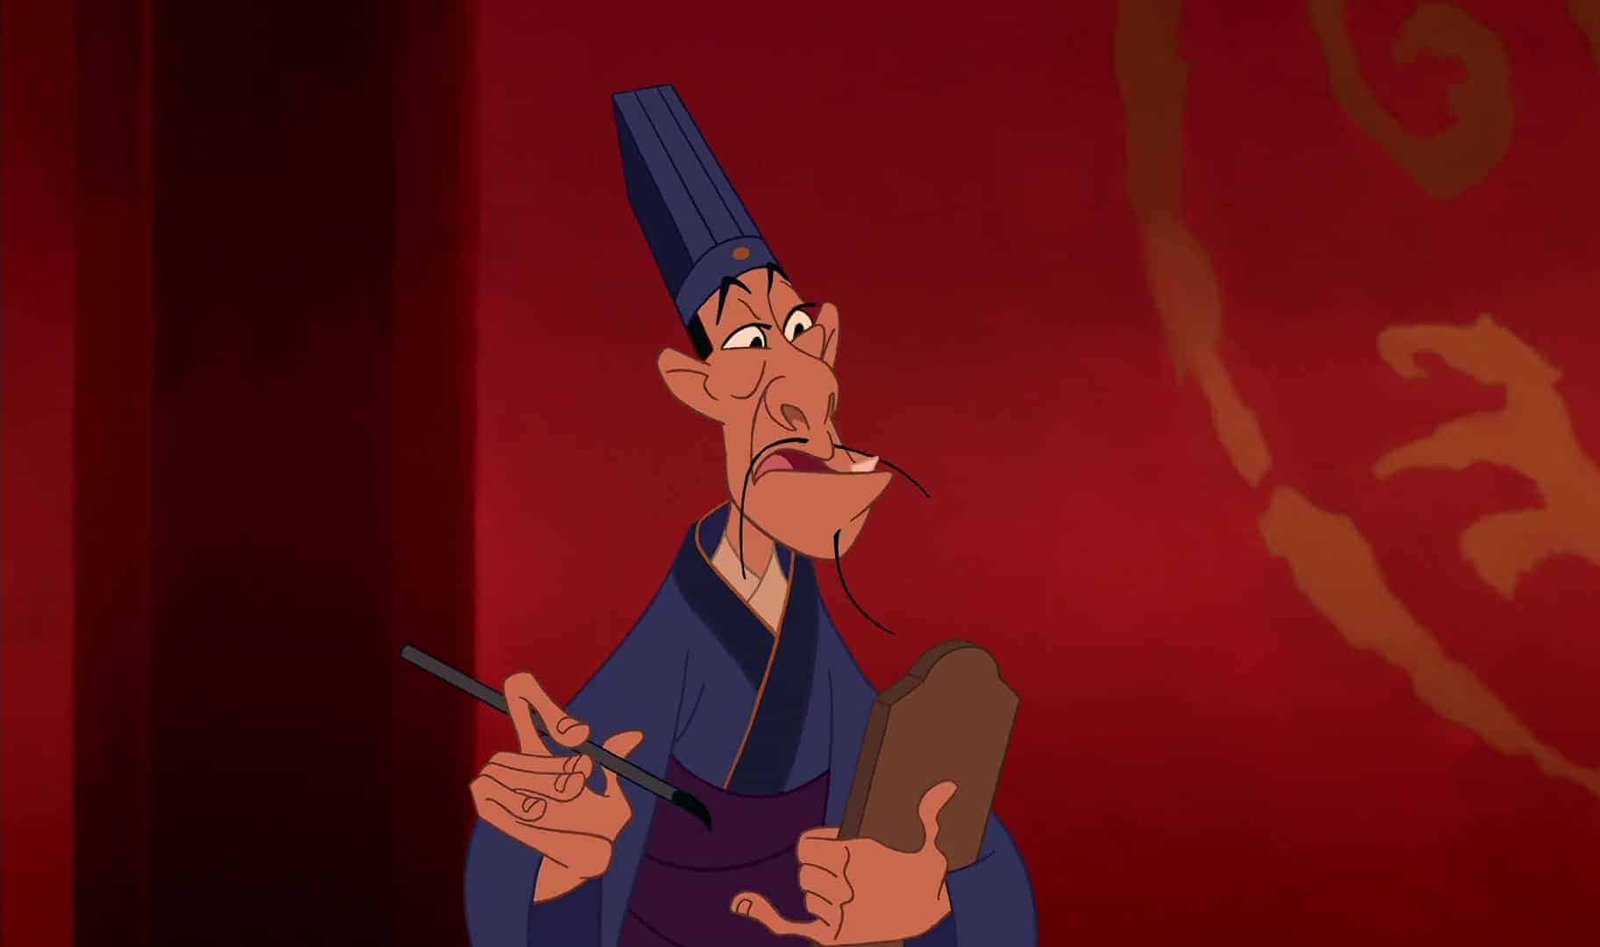 Un personnage animé ressemblant à un fonctionnaire chinois traditionnel, vêtu d'une robe bleue et d'un grand chapeau noir, semble perplexe tout en tenant un parchemin et un pinceau dans une pièce aux murs rouges mettant en vedette des personnages de Disney.